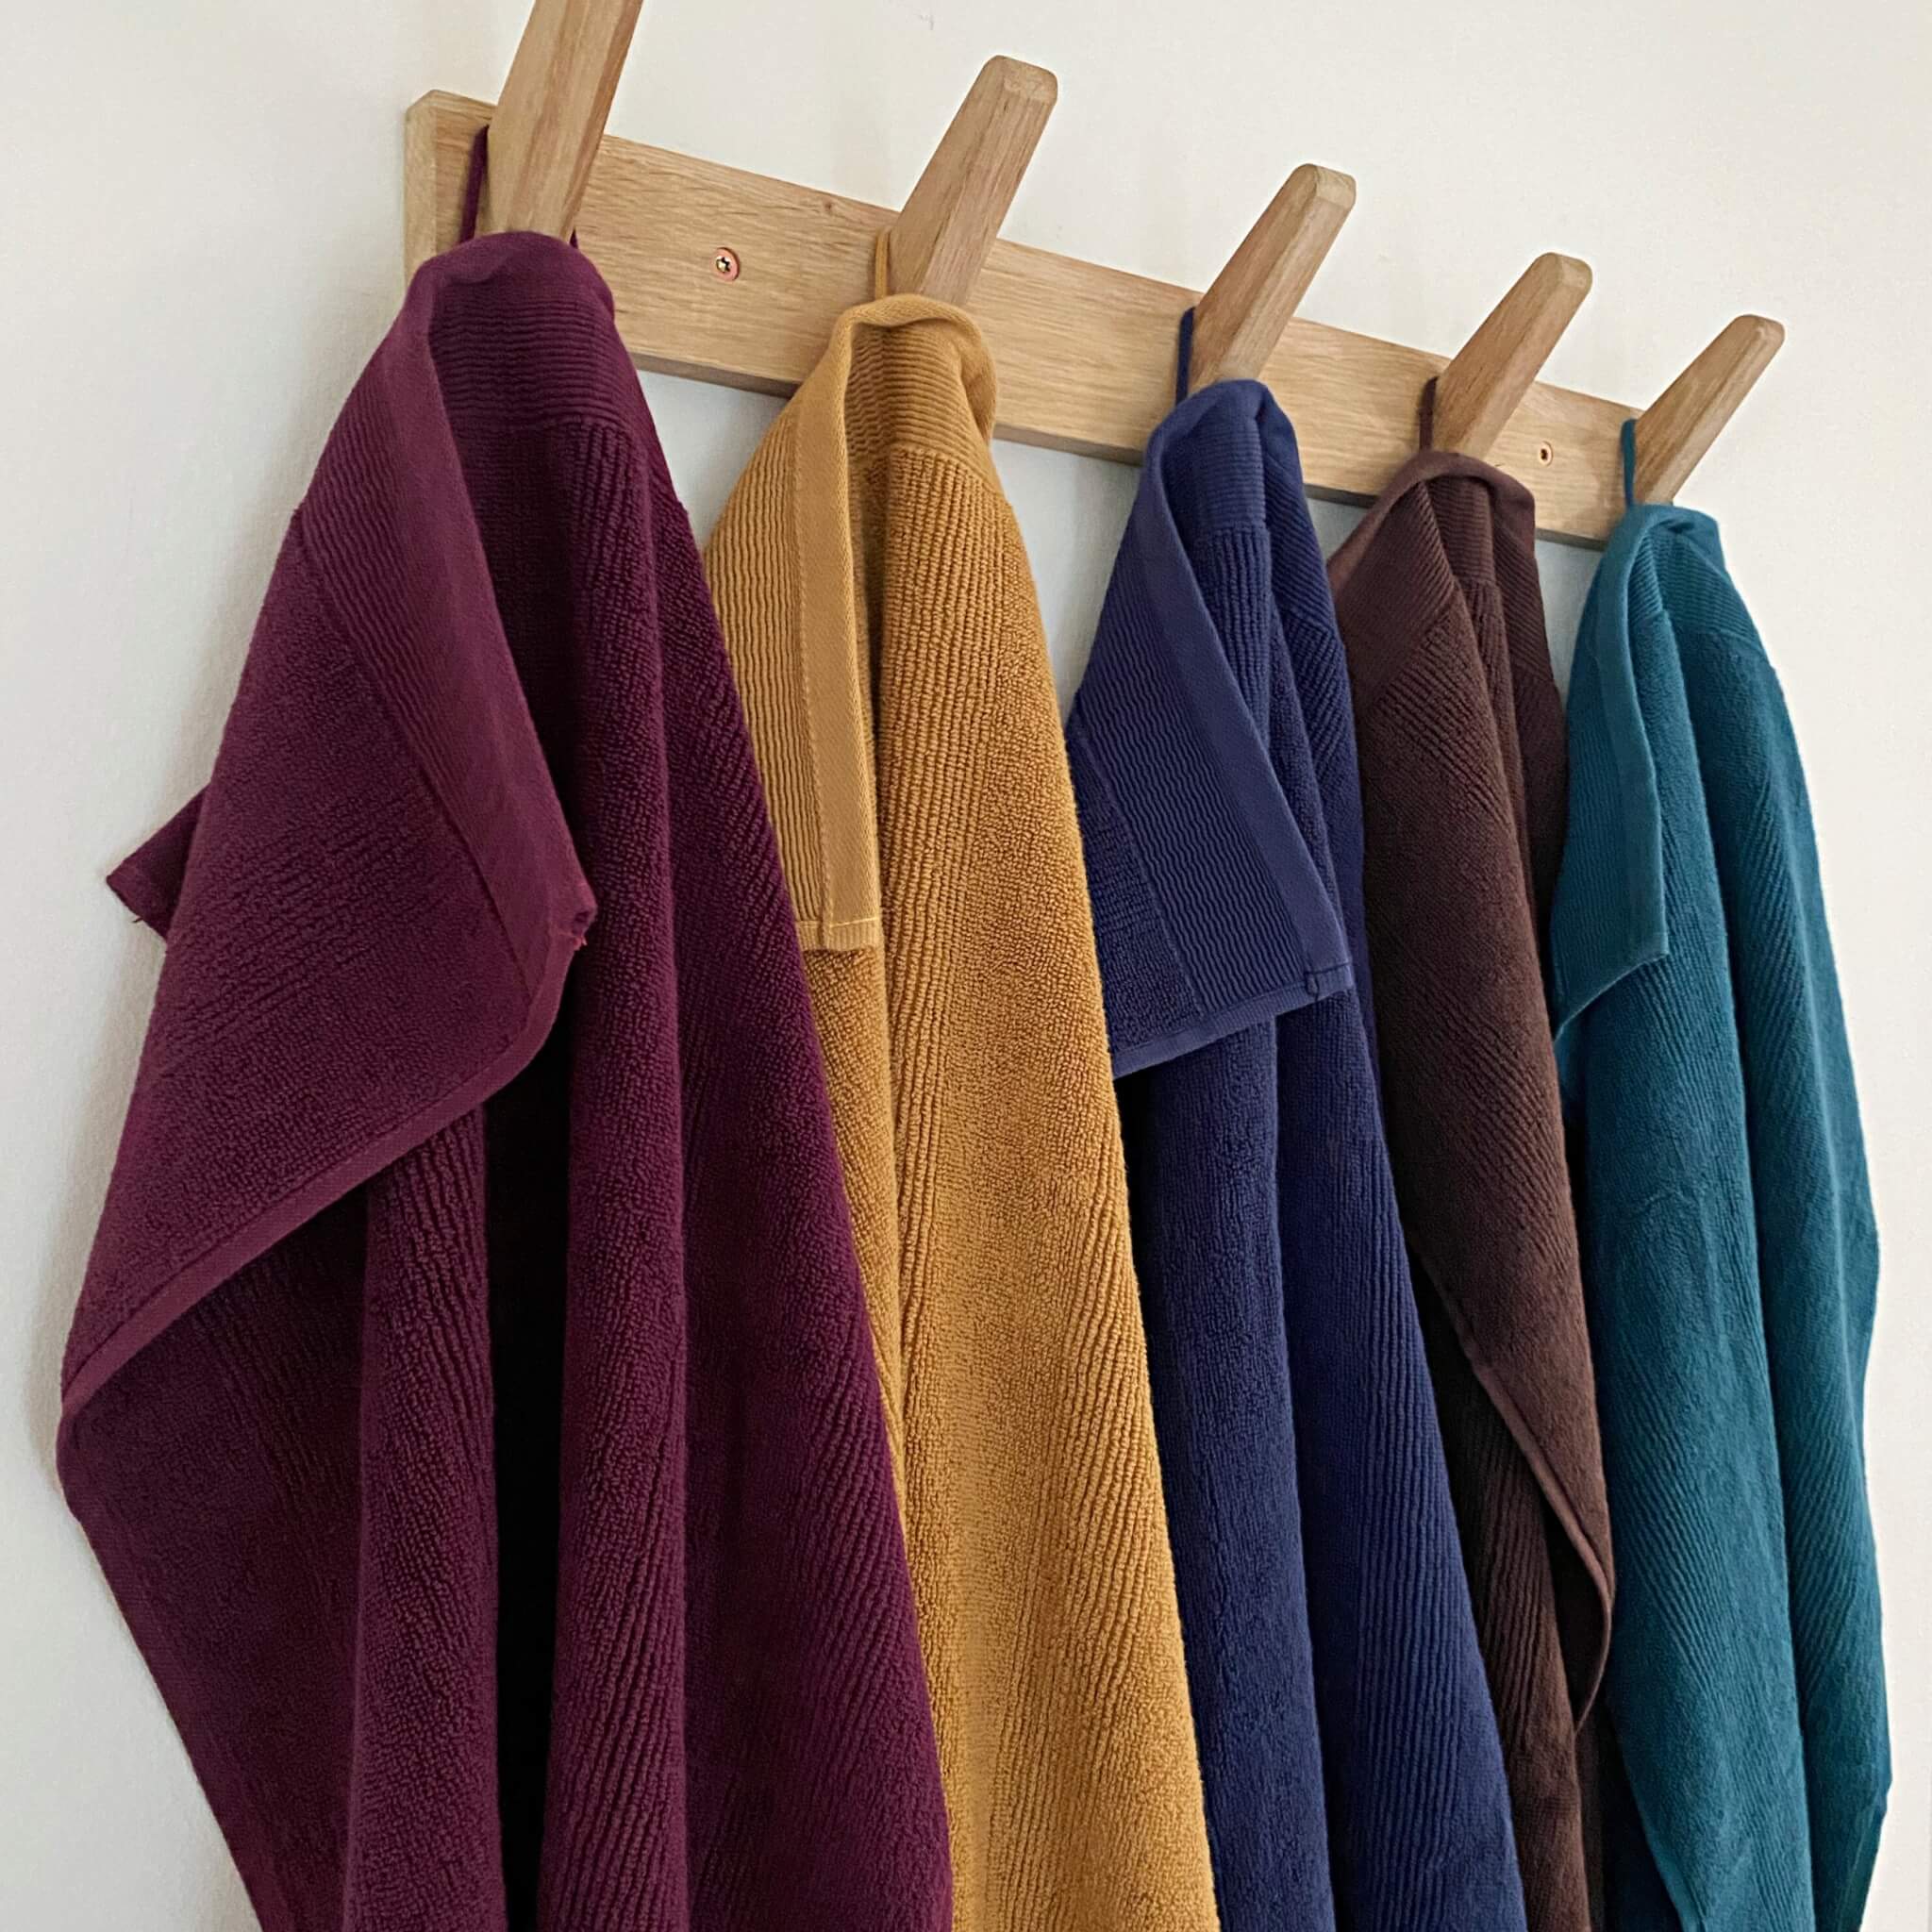 Håndklæder i forskellige farver hænger på en knagerække i entréen